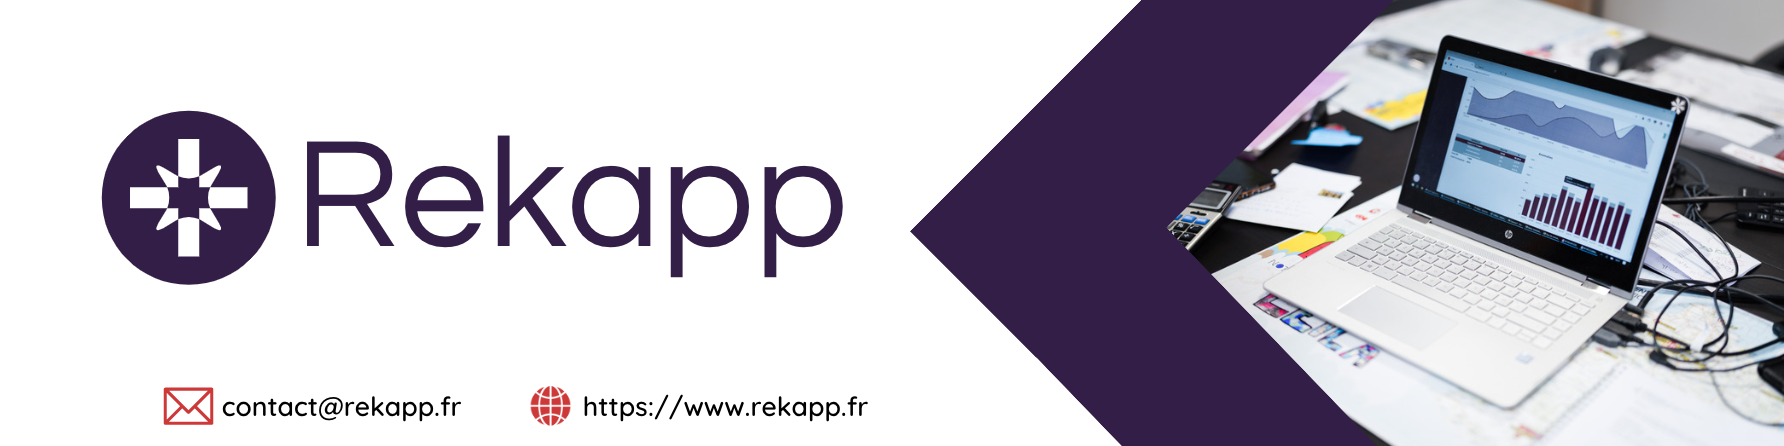 Review Rekapp: An intervention management application - Appvizer